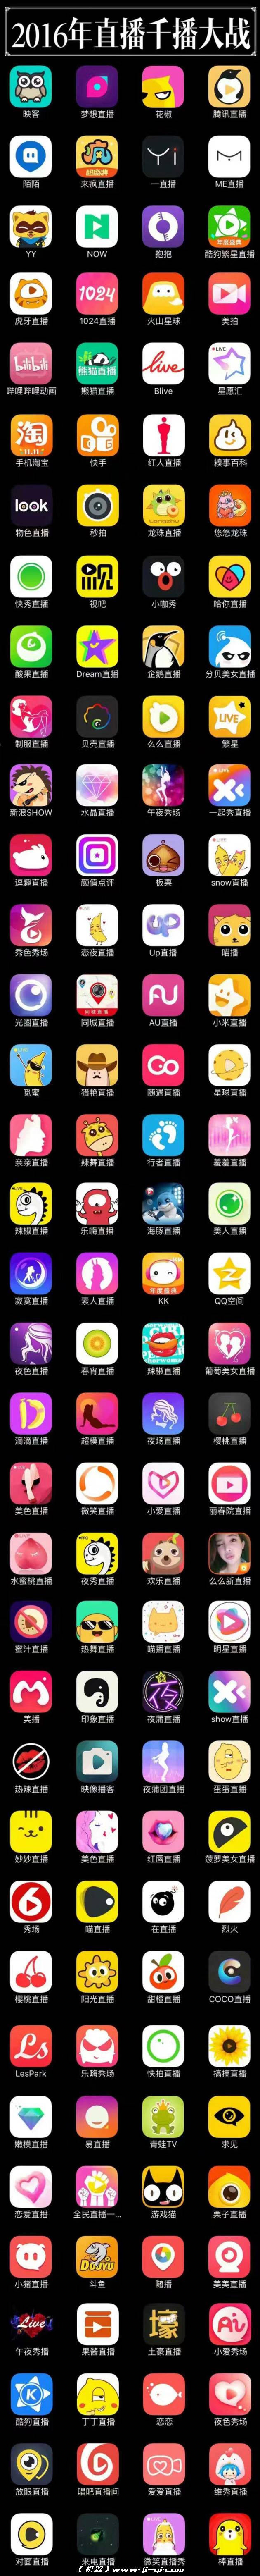 新干线live直播app